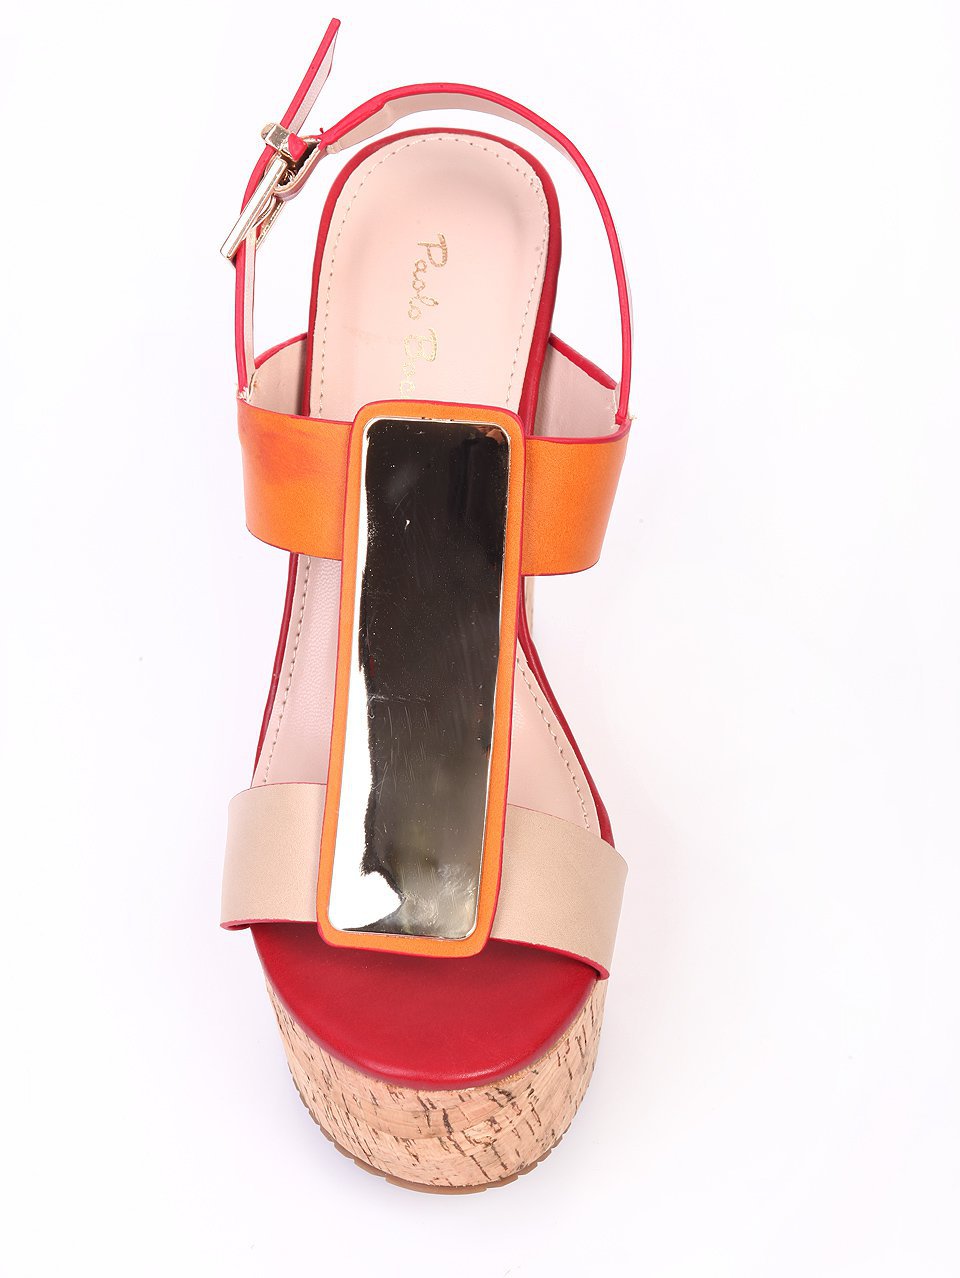 Елегантни дамски сандали н аплатформа в черно и бежово 4L-16274 red/beige/orange